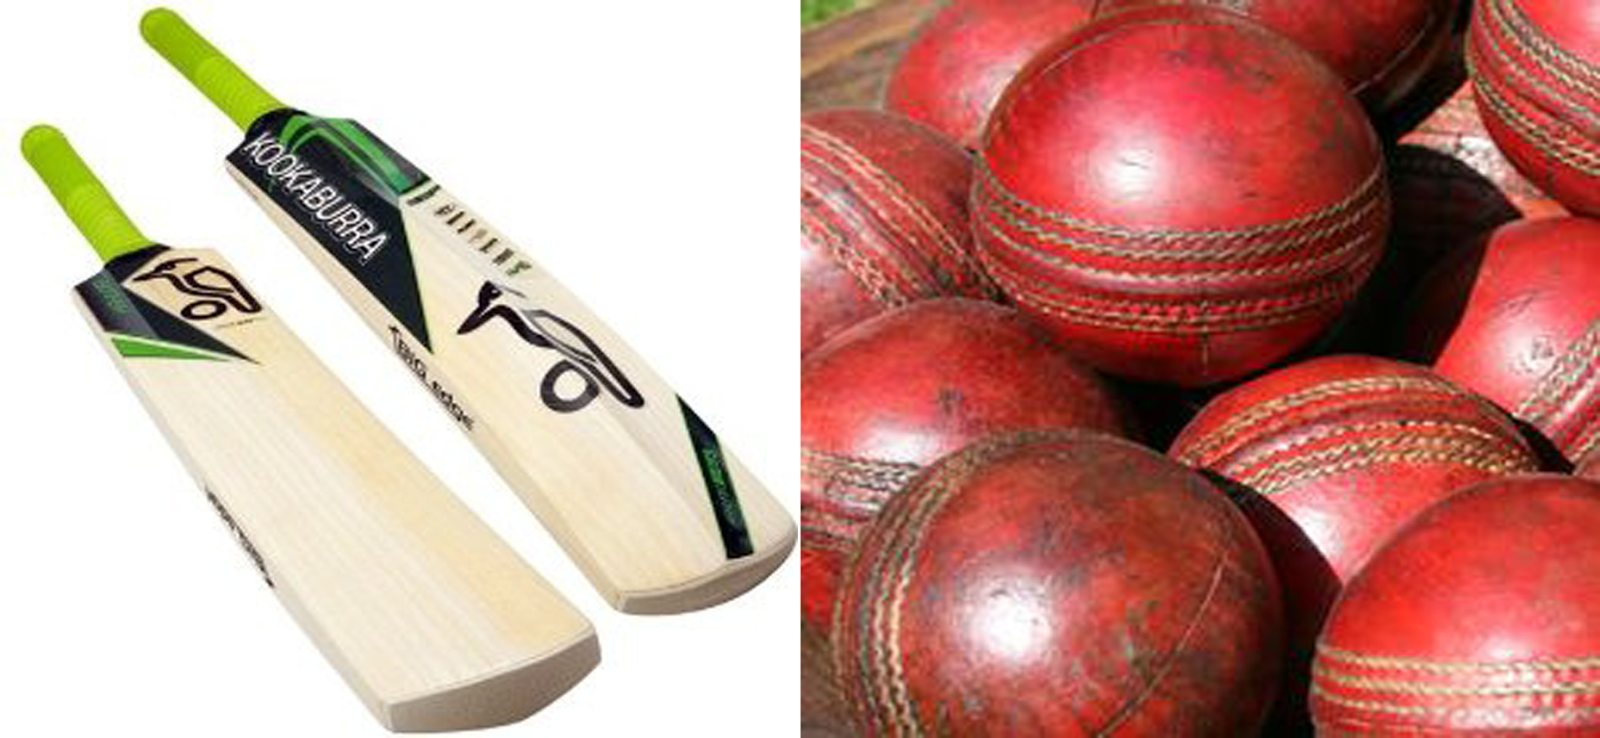 Indianos inventam campeonato de críquete e enganam apostadores